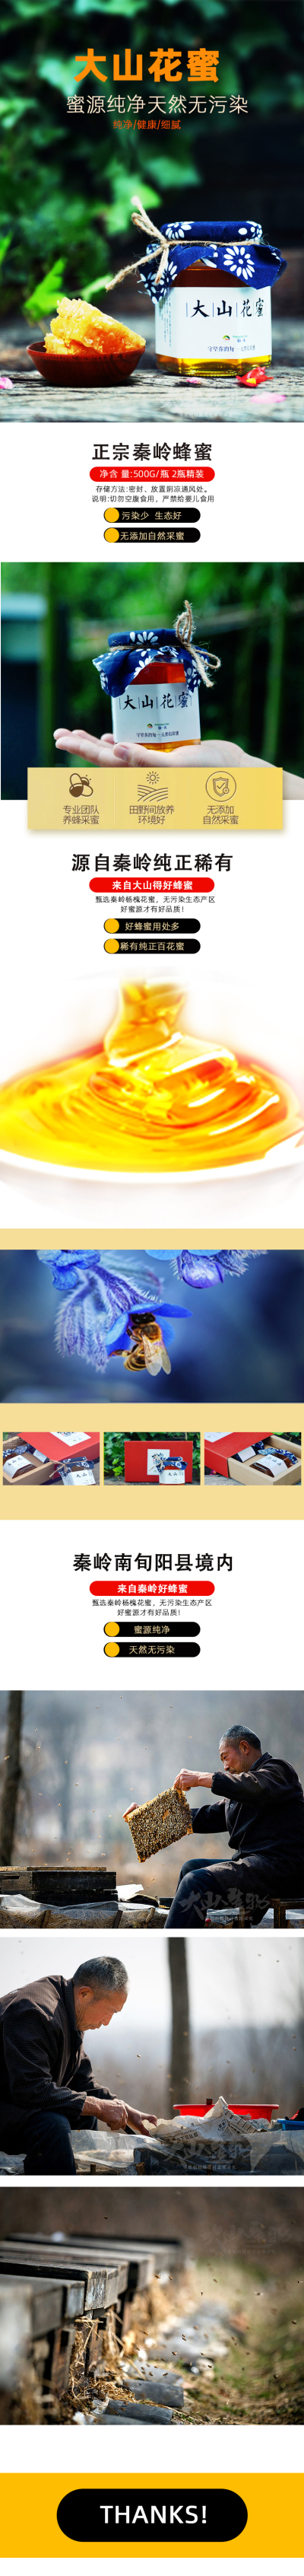 详情页---土蜂蜜